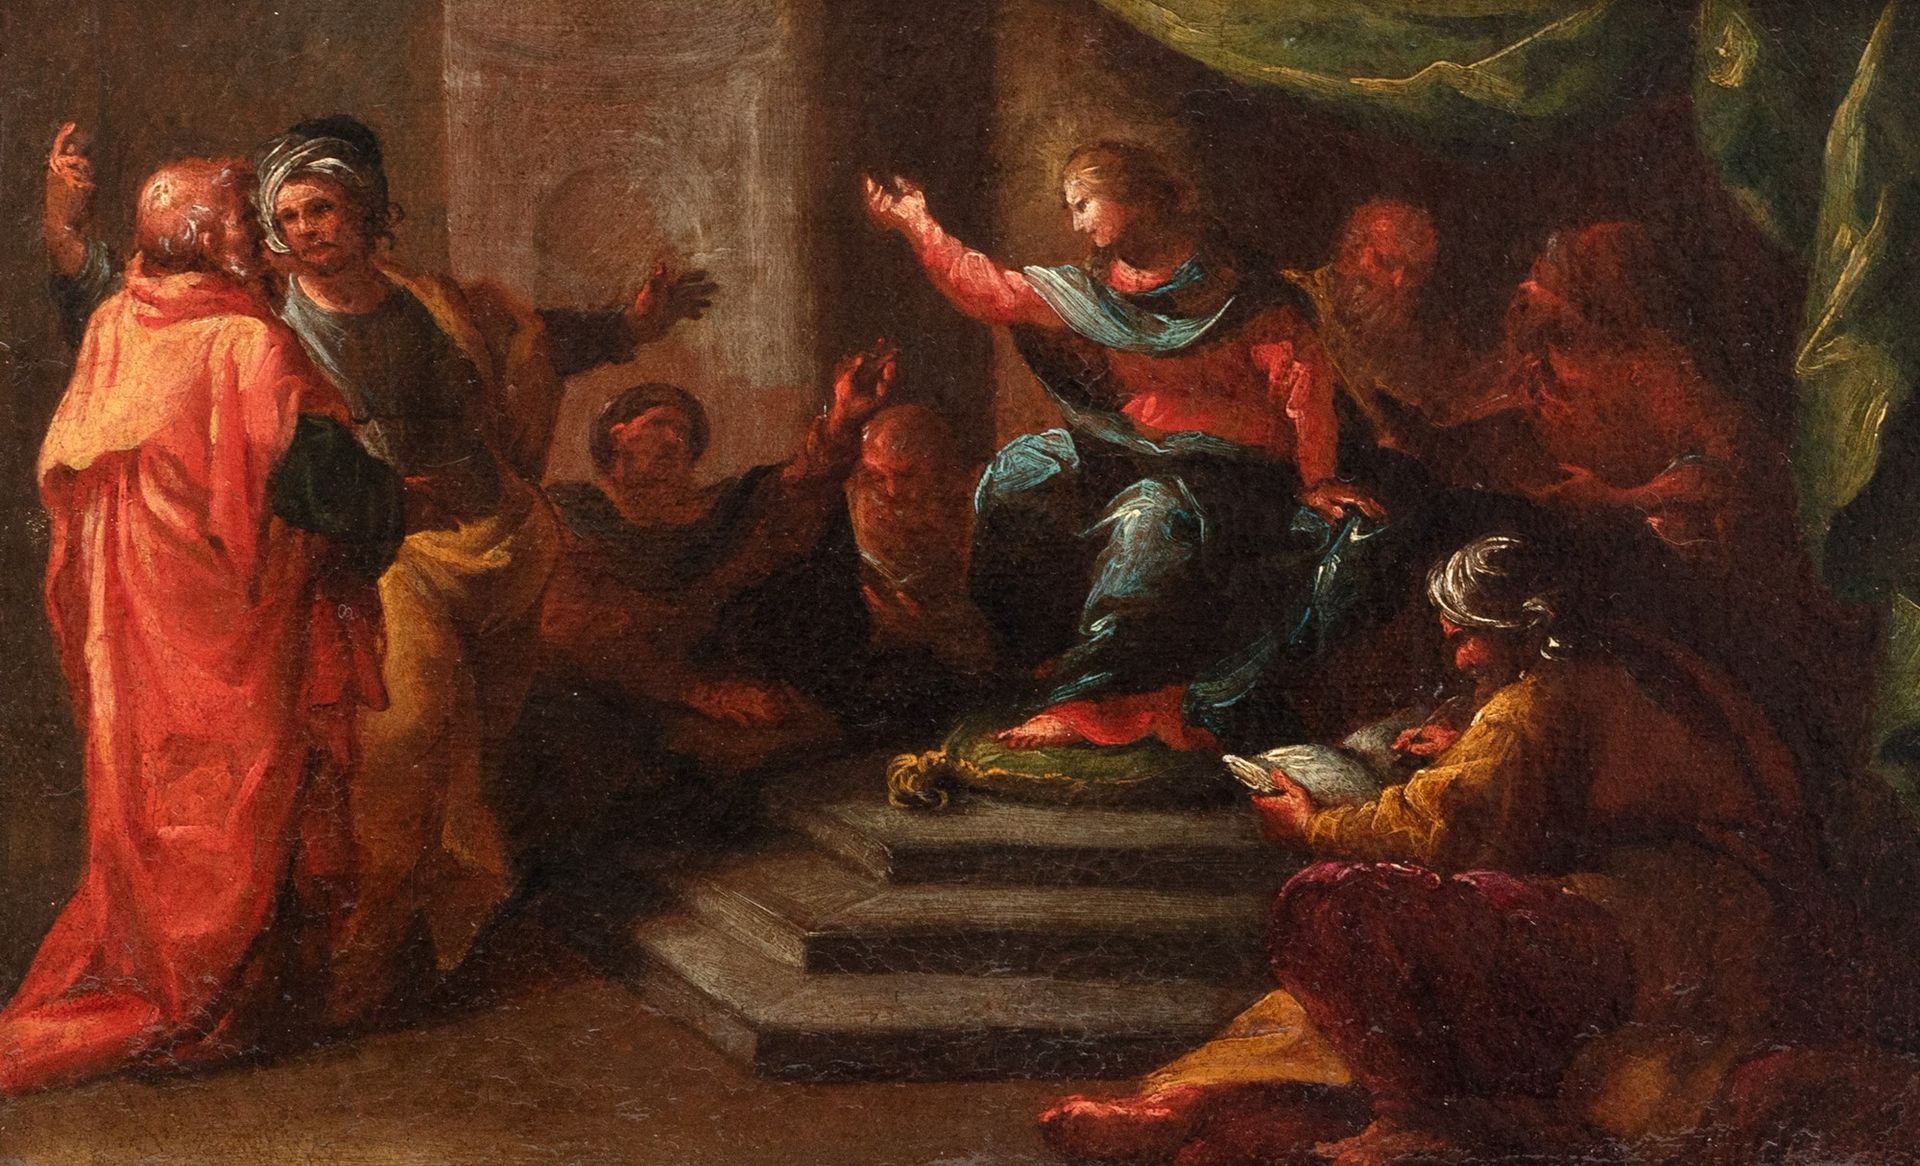 Scuola dell'Italia meridionale, secolo XVII 医生中的耶稣

布面油画
22 x 35.5 cm